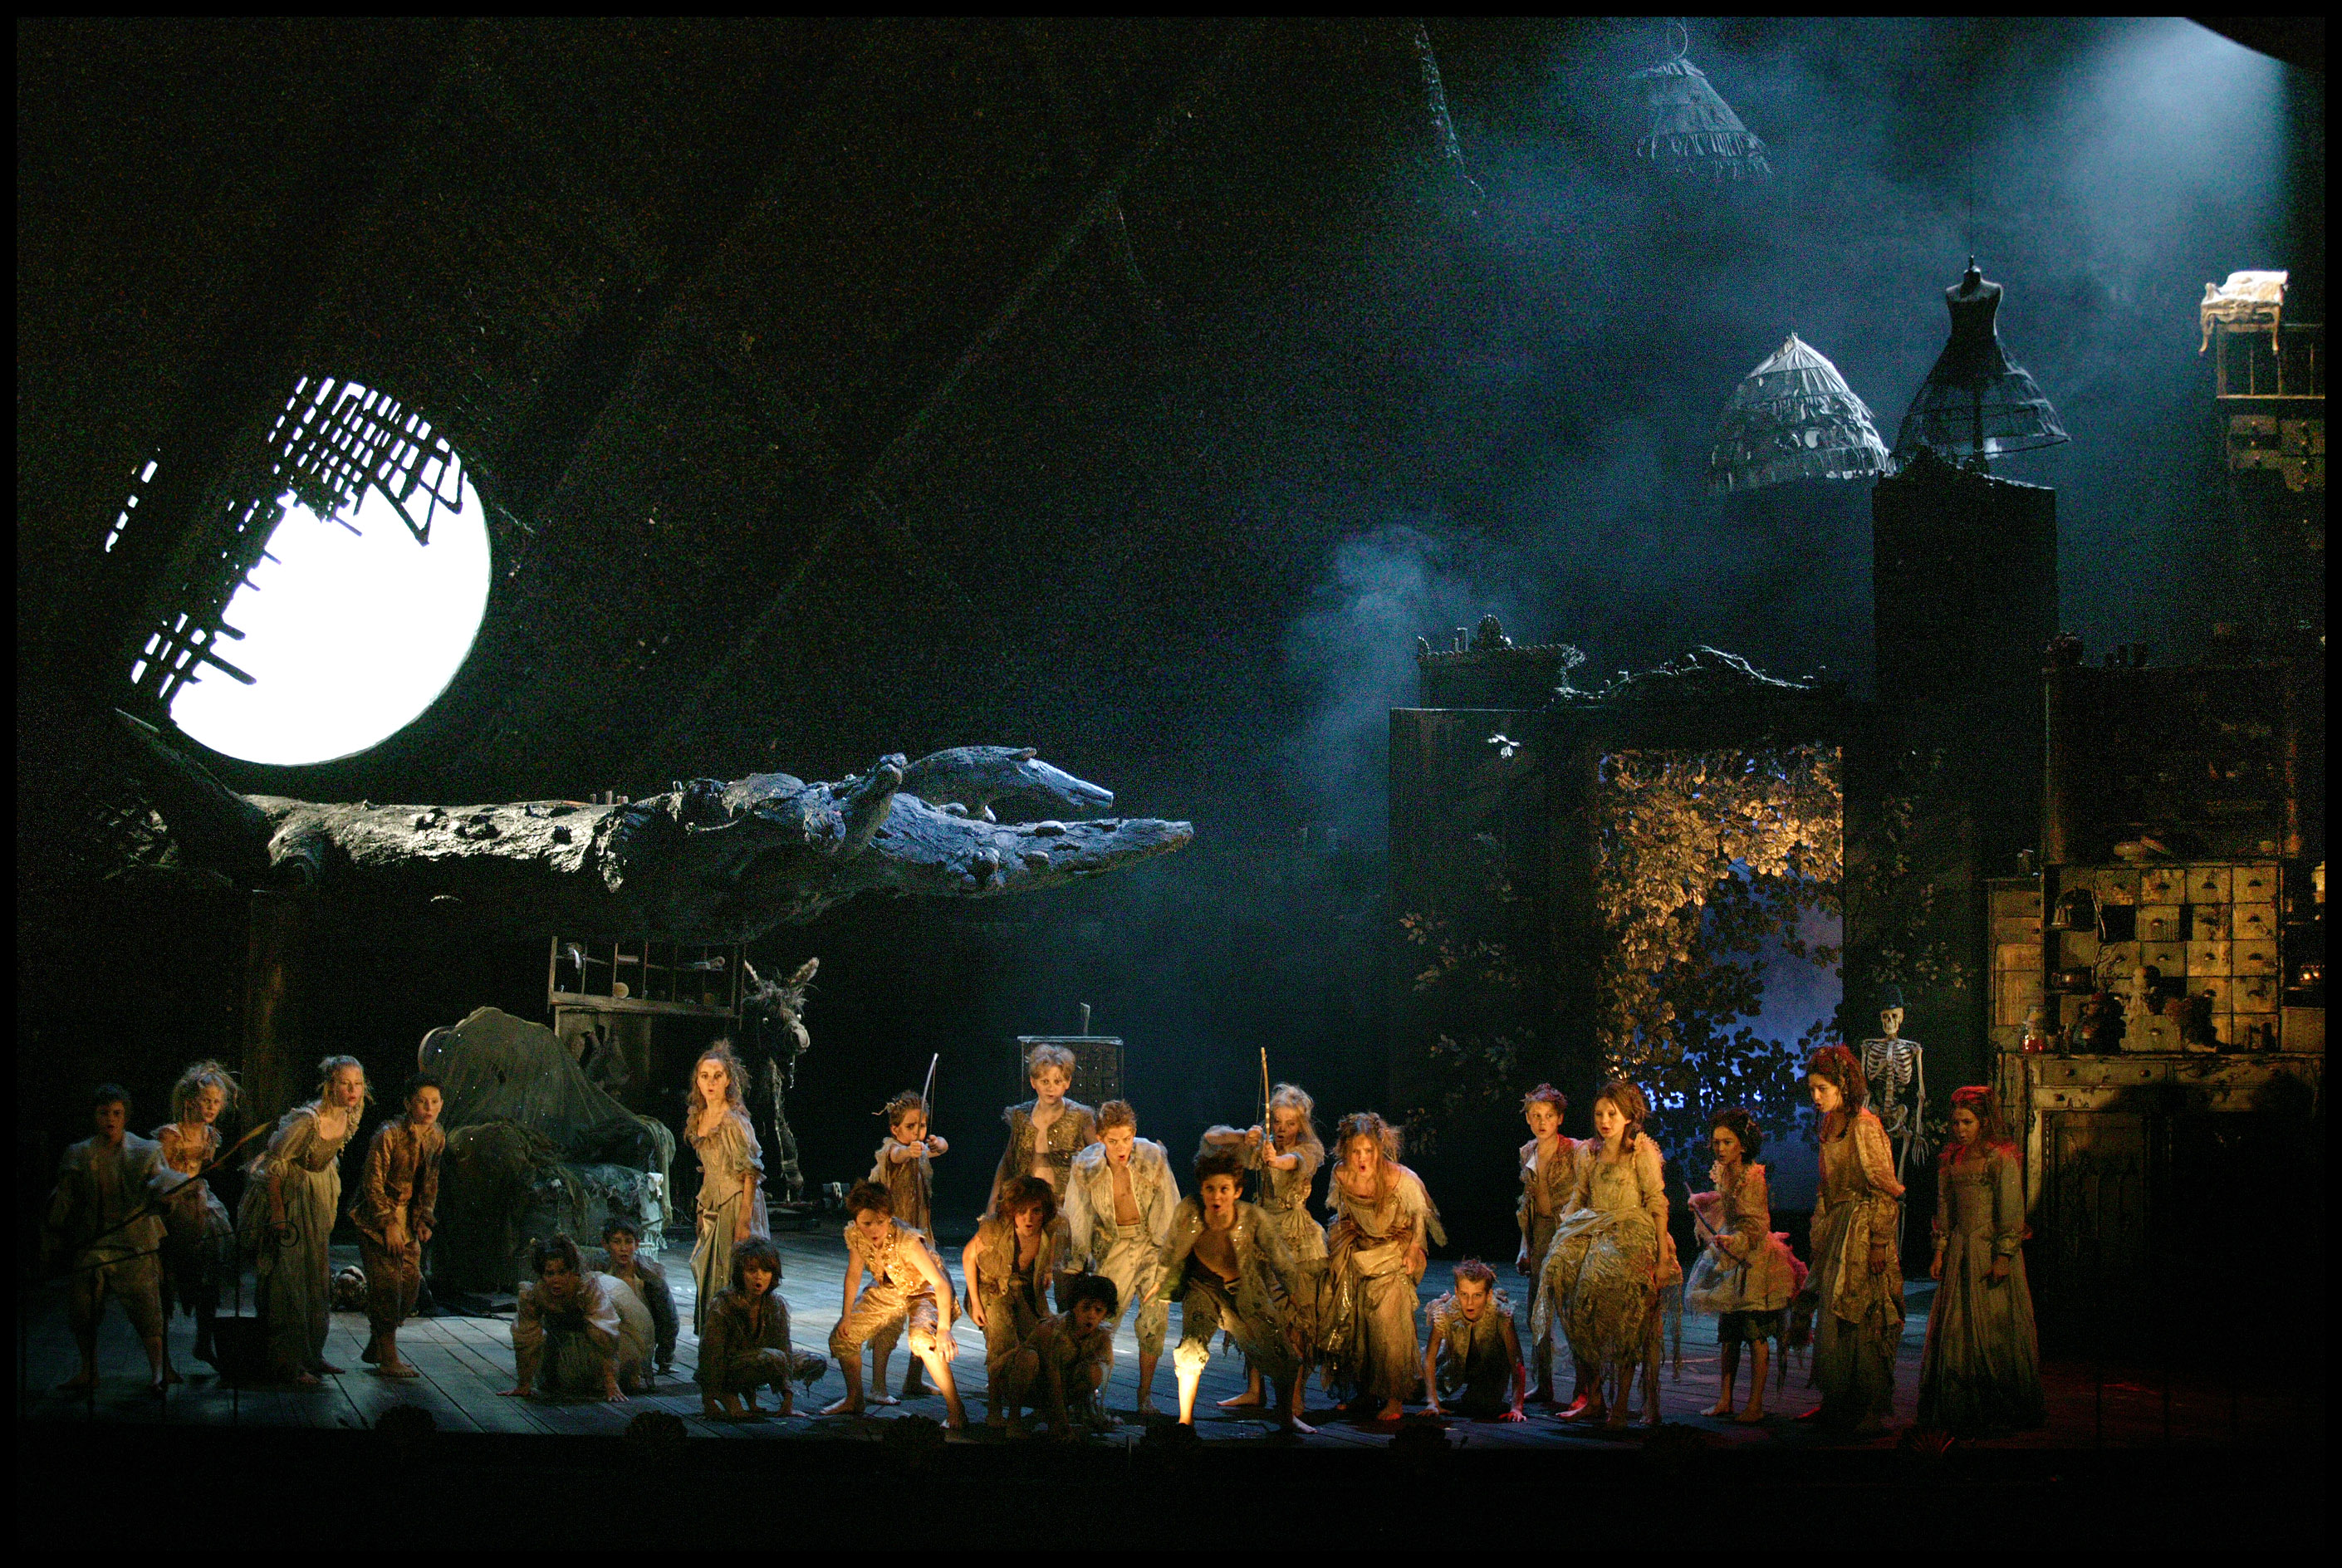 新国立劇場オペラ再開公演 夏の夜の夢 10月4日より新国立劇場オペラパレスで上演 文化庁のプレスリリース